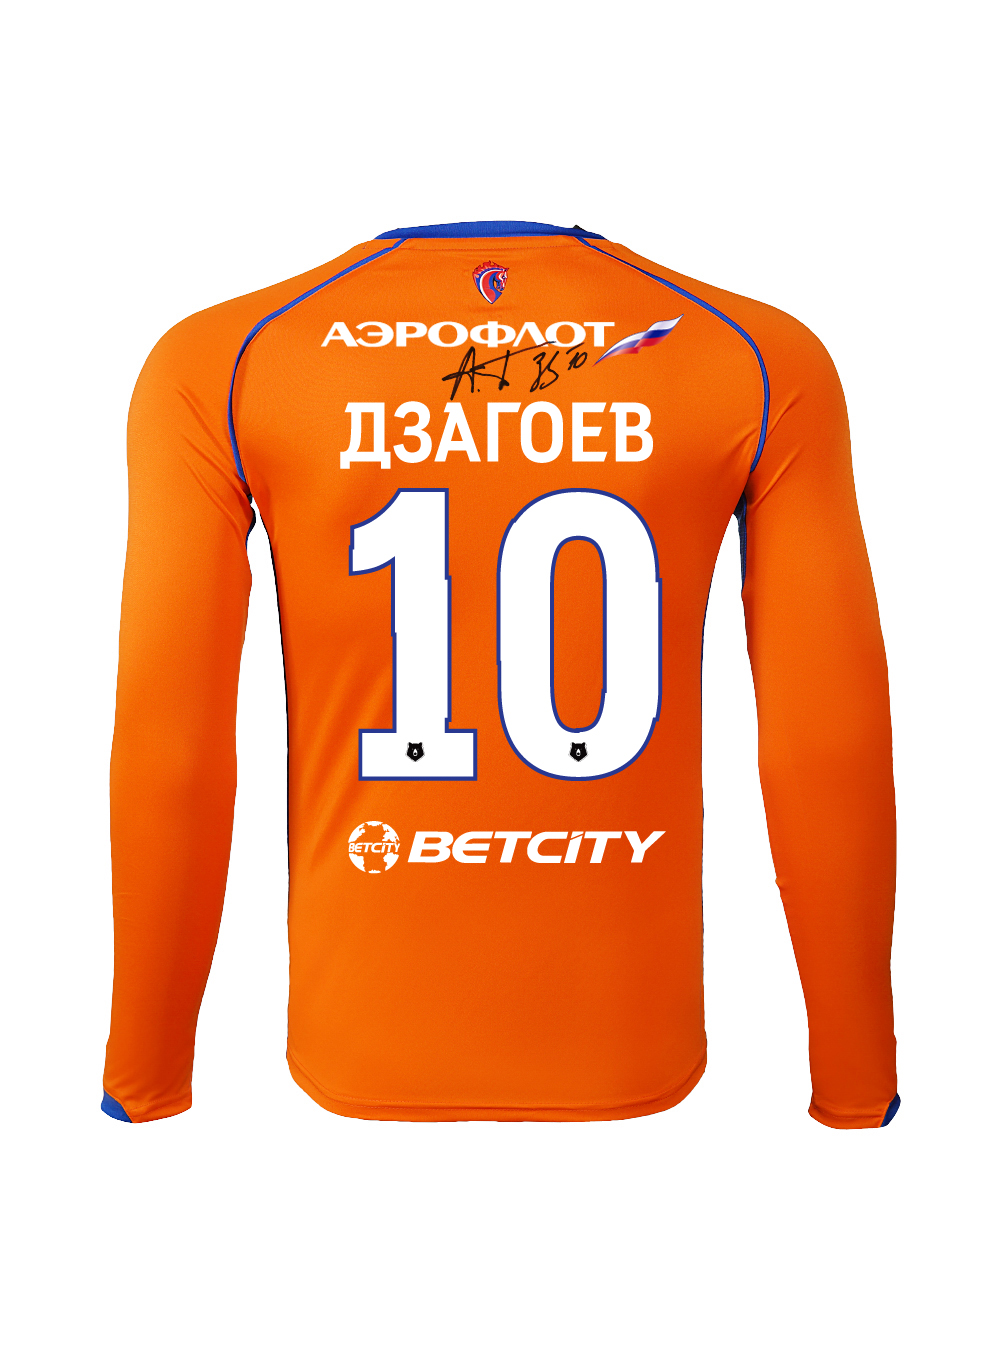 Купить Футболка игровая резервная с длинным рукавом с автографом ДЗАГОЕВА (XL) по Нижнему Новгороду